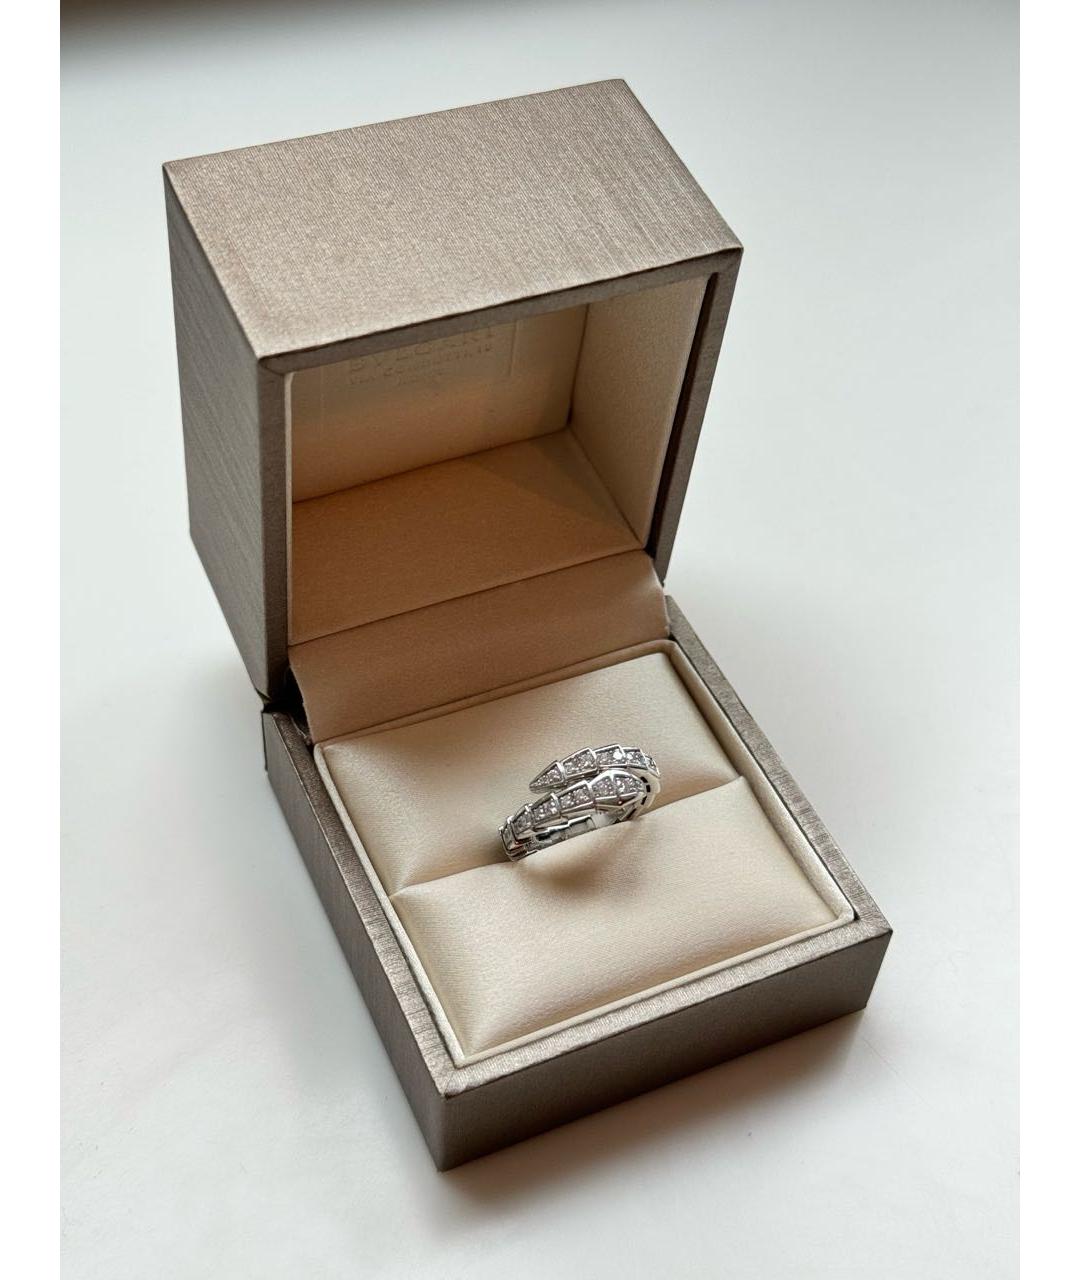 BVLGARI Серебряное кольцо из белого золота, фото 2